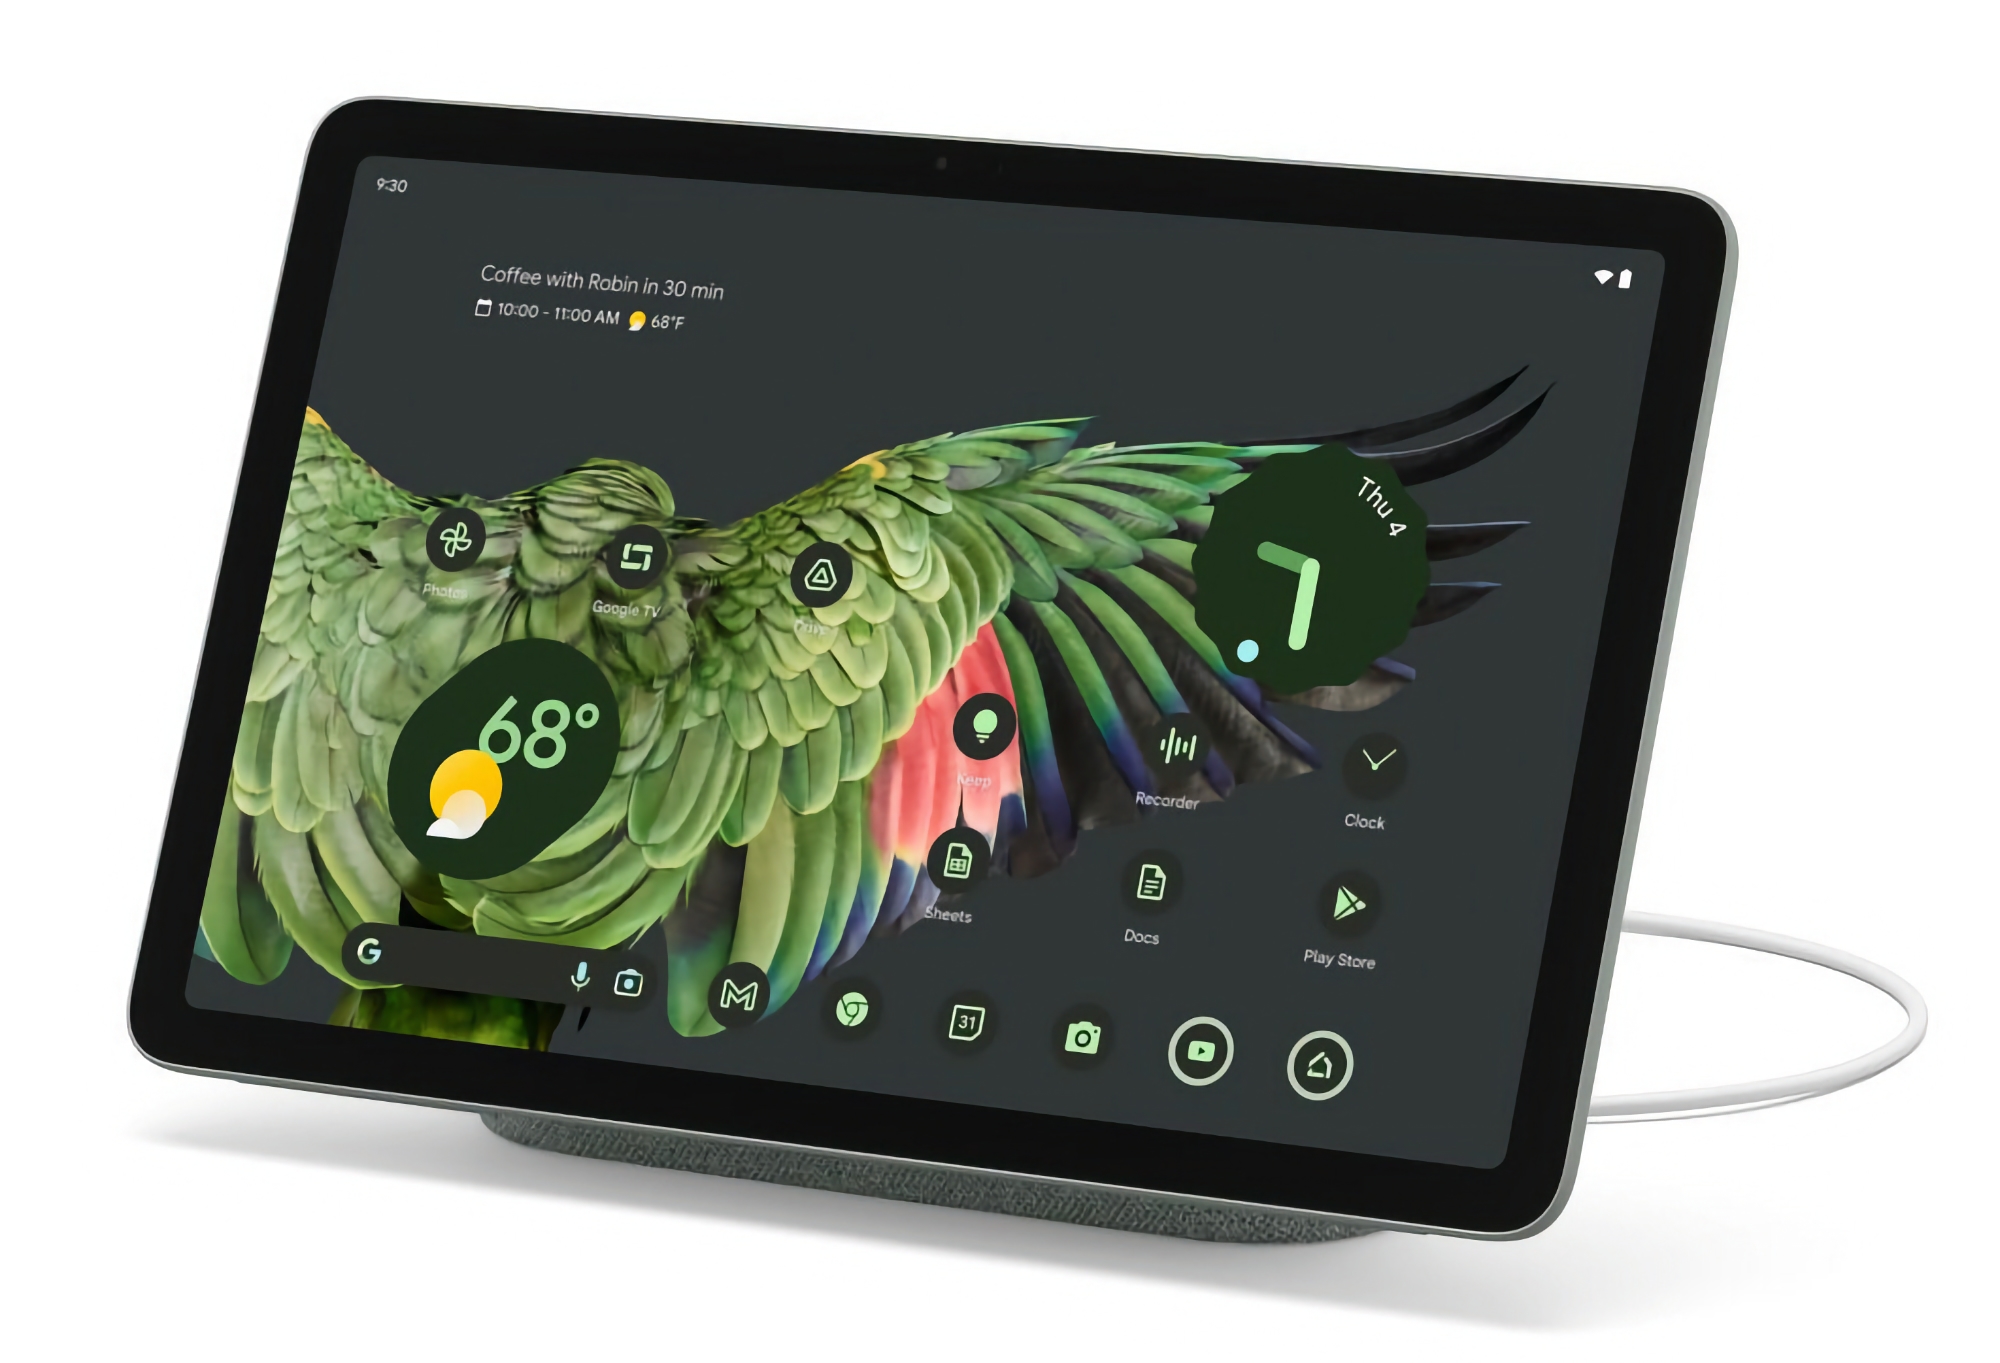 La tableta Google Pixel con dock incluido está de oferta en Amazon con un descuento de 100 dólares